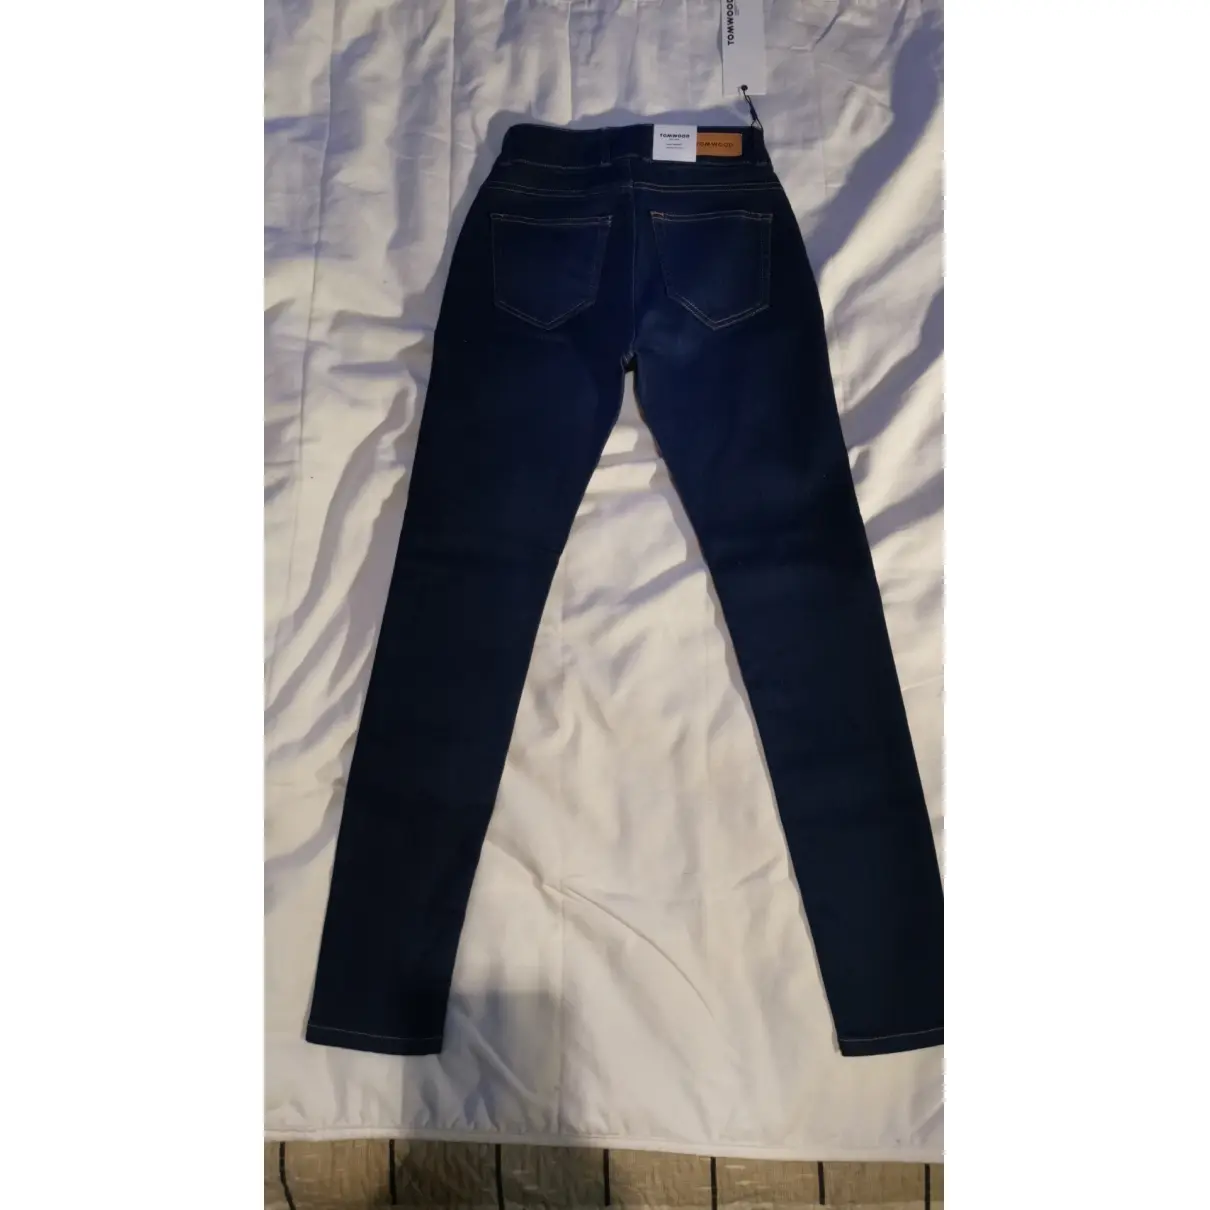 Buy Tom Wood Slim jeans online